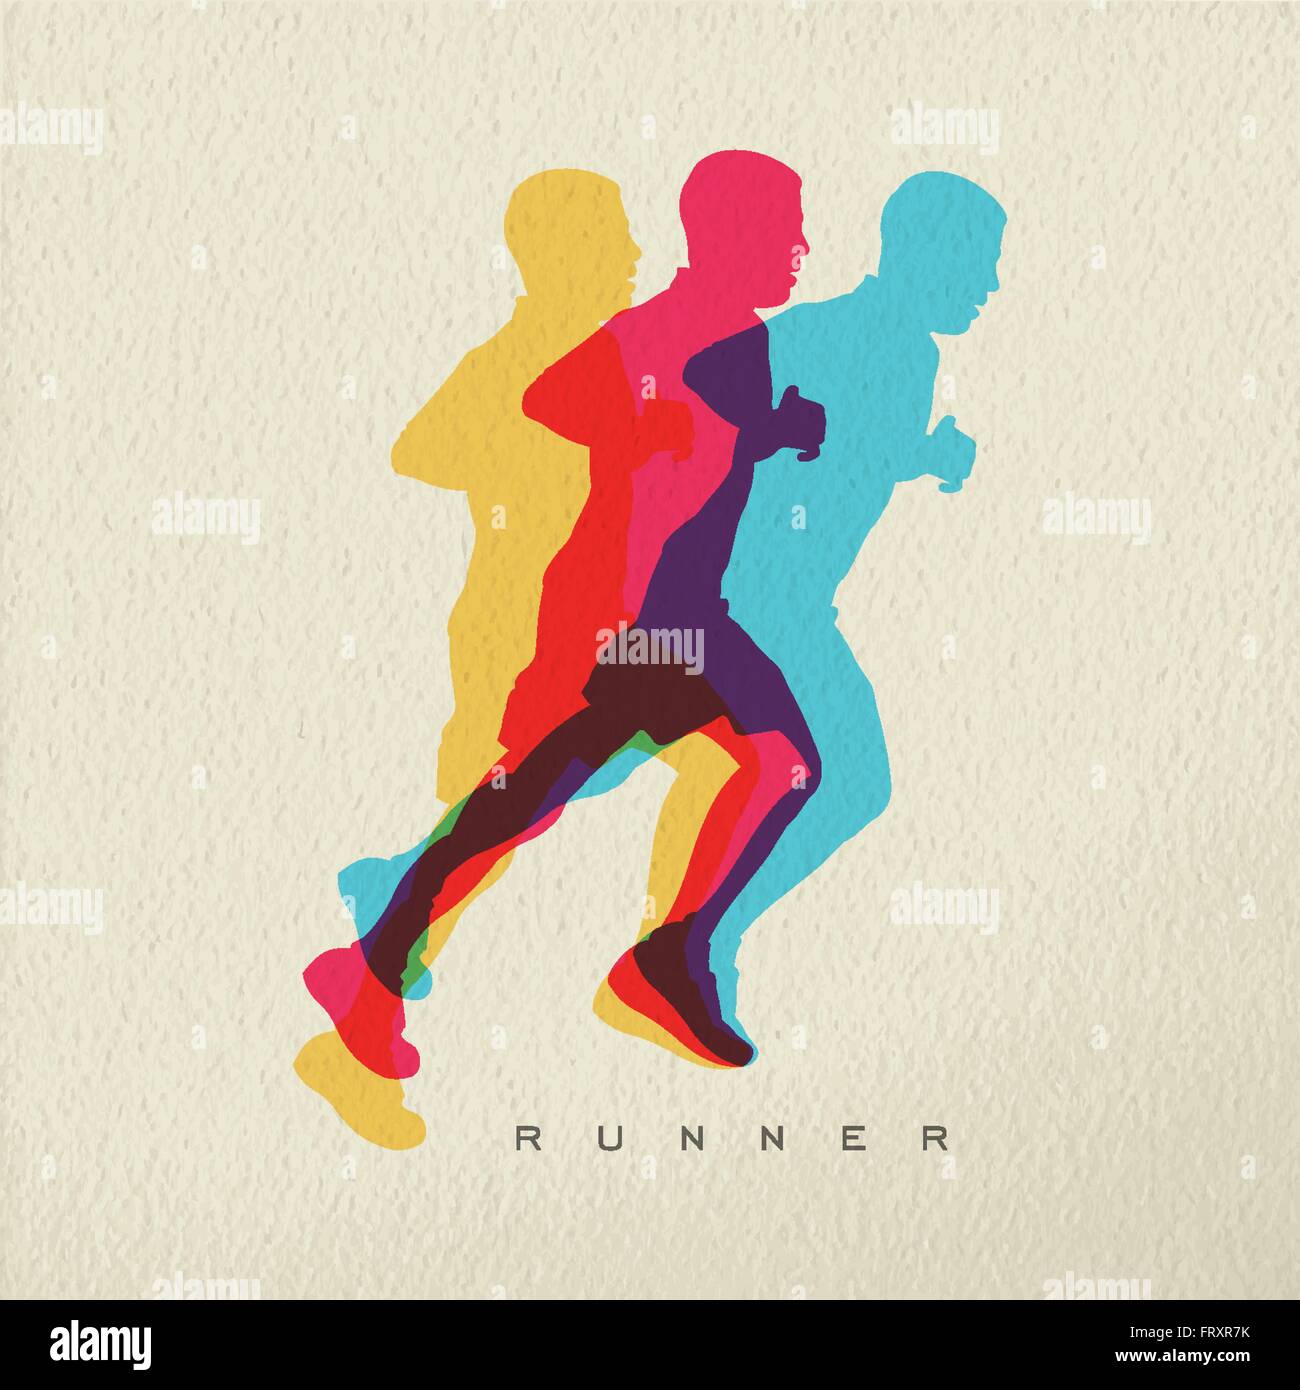 Runner concept illustration de l'homme sportif d'ossature d'exécution d'une course. Design moderne et coloré sur la texture de fond. Vecteur EPS10 Illustration de Vecteur